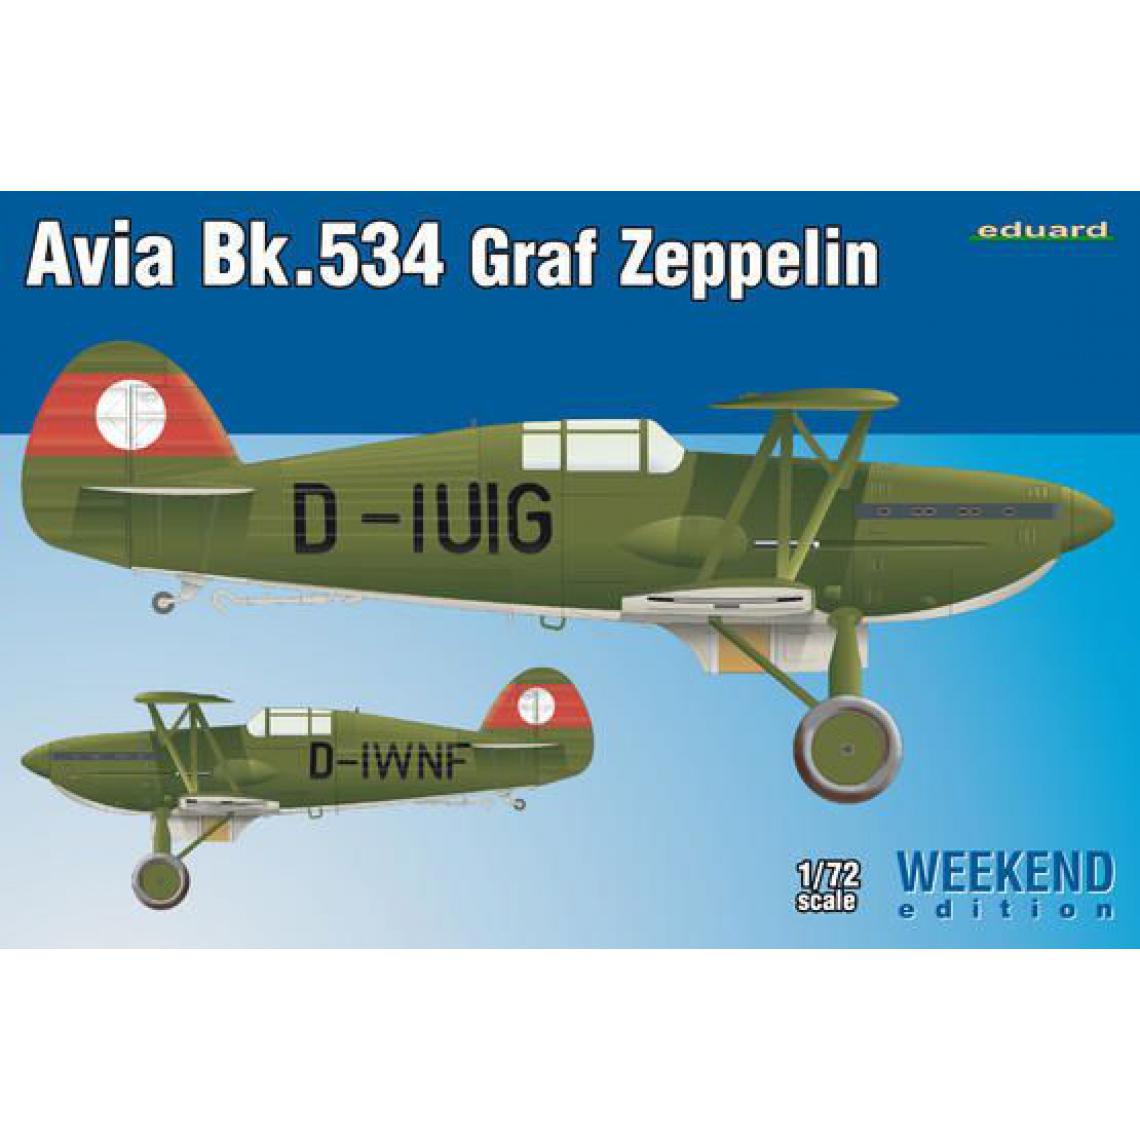 Eduard - Avia Bk-534 Graf Zeppelin Weekend Editio - 1:72e - Eduard Plastic Kits - Accessoires et pièces